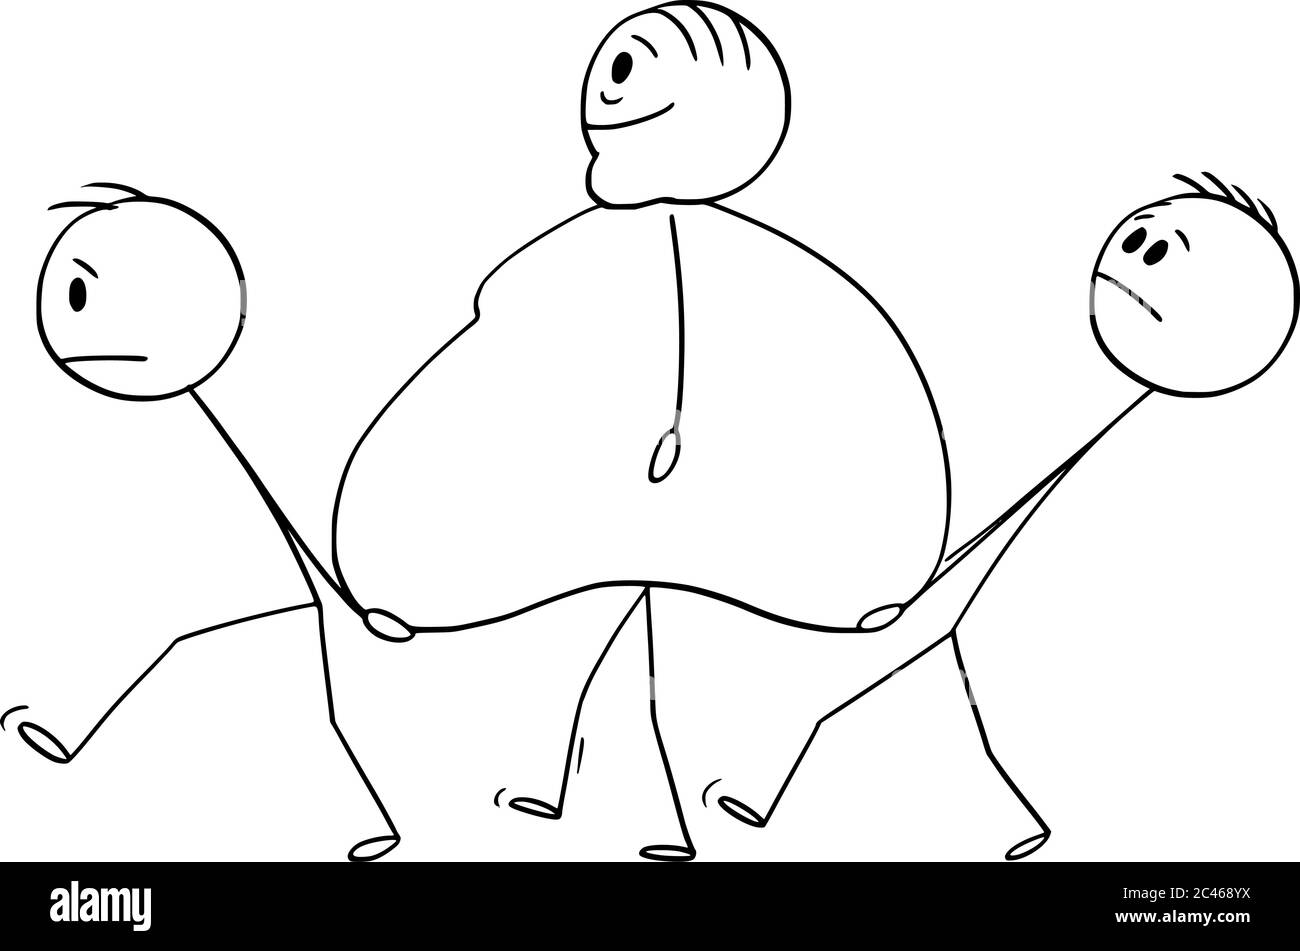 Vektor Cartoon Stick Figur Zeichnung konzeptionelle Illustration von übergewichtigen, übergewichtigen oder fettreichen Mann zu Fuß mit zwei Männern trägt seinen Bauch. Stock Vektor